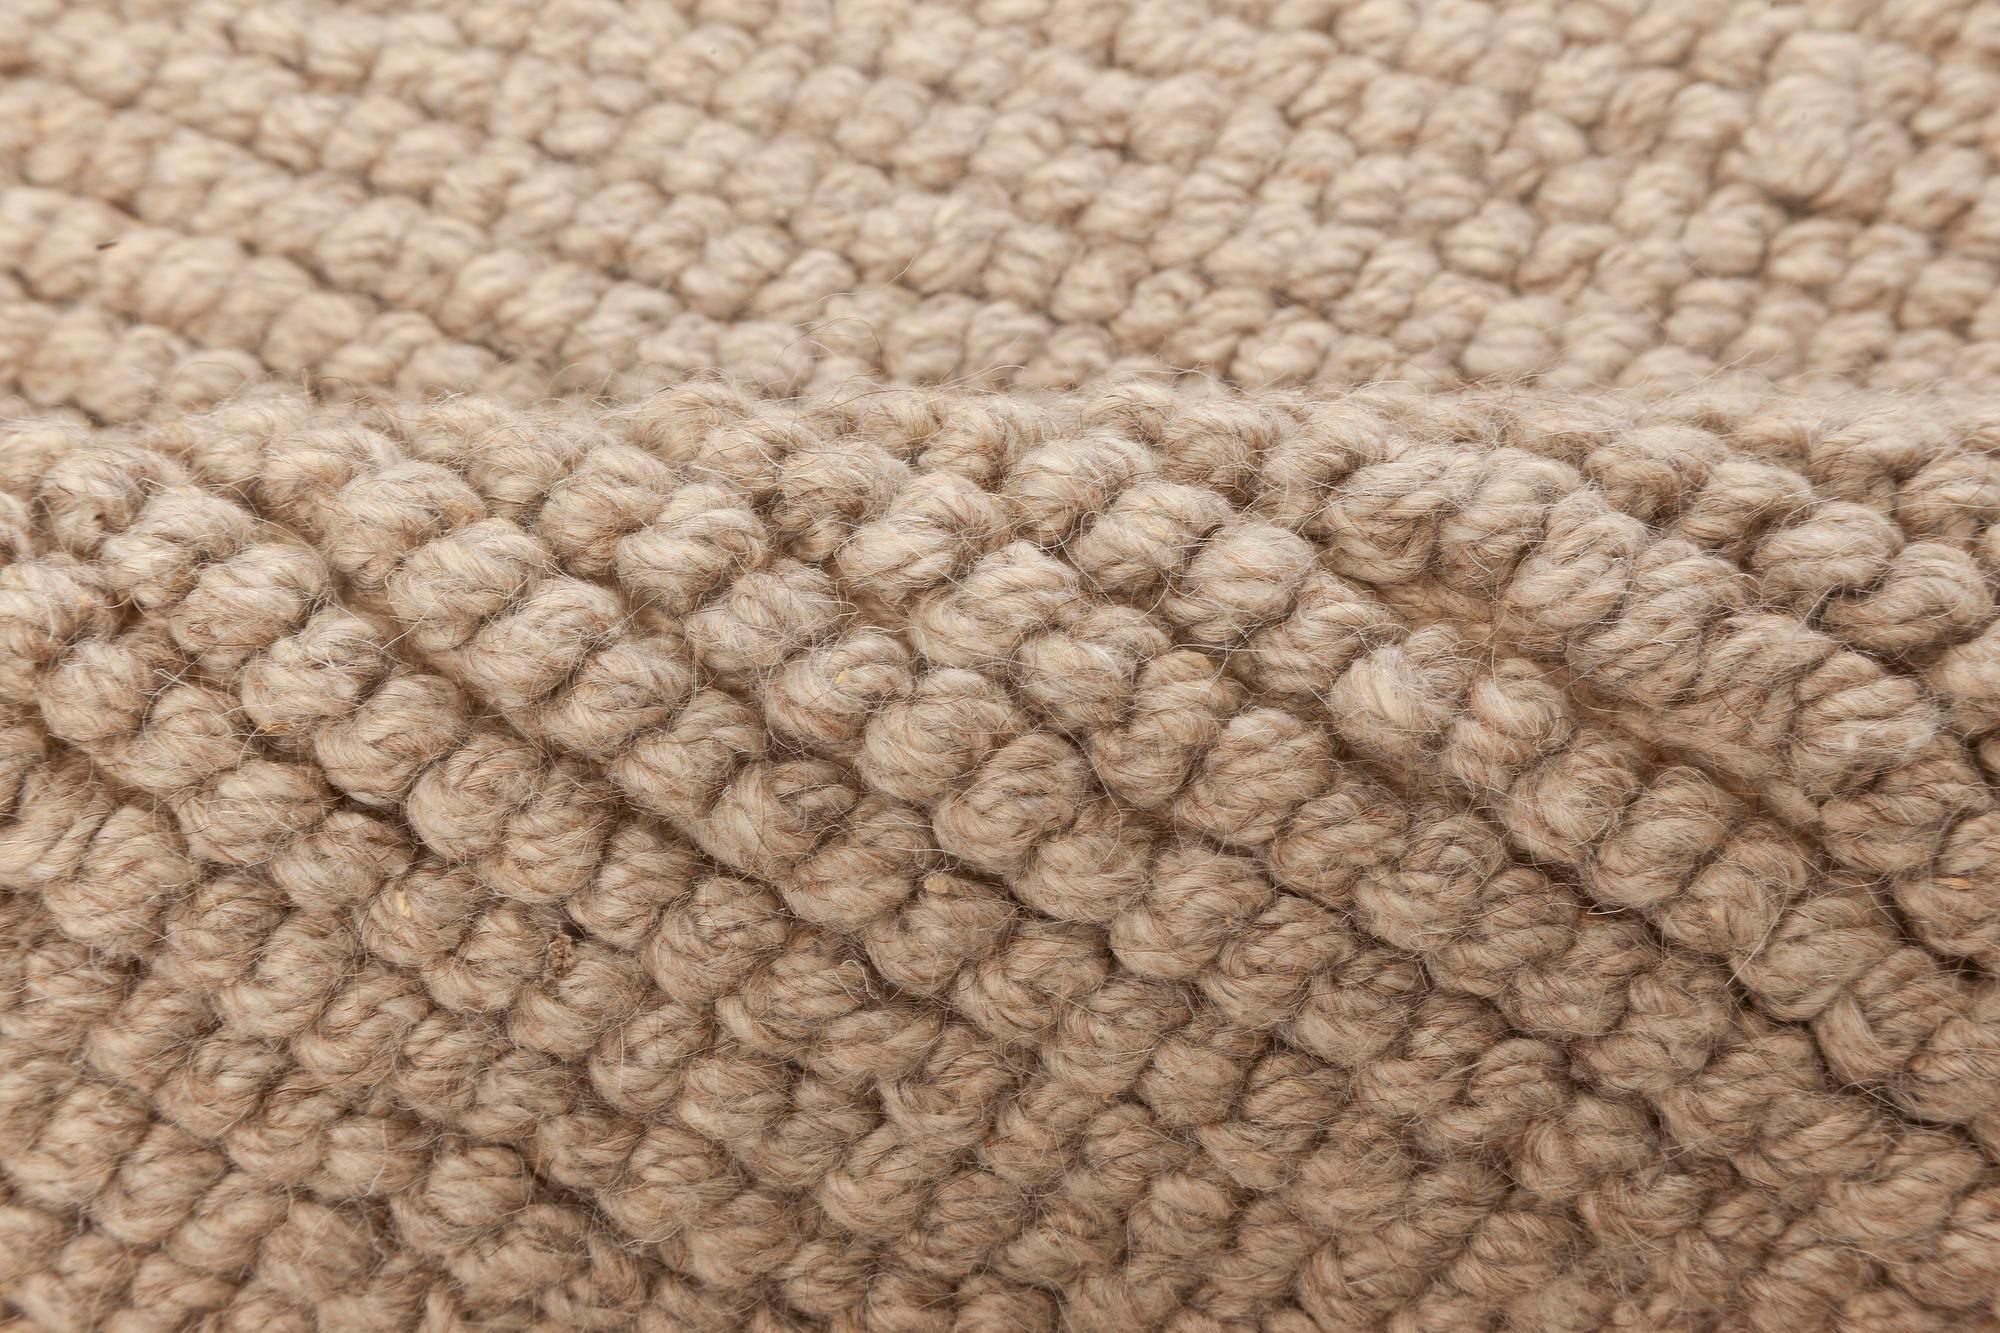 Modern Brown Flat-Weave Wool rug by Doris Leslie Blau
Size: 9'1